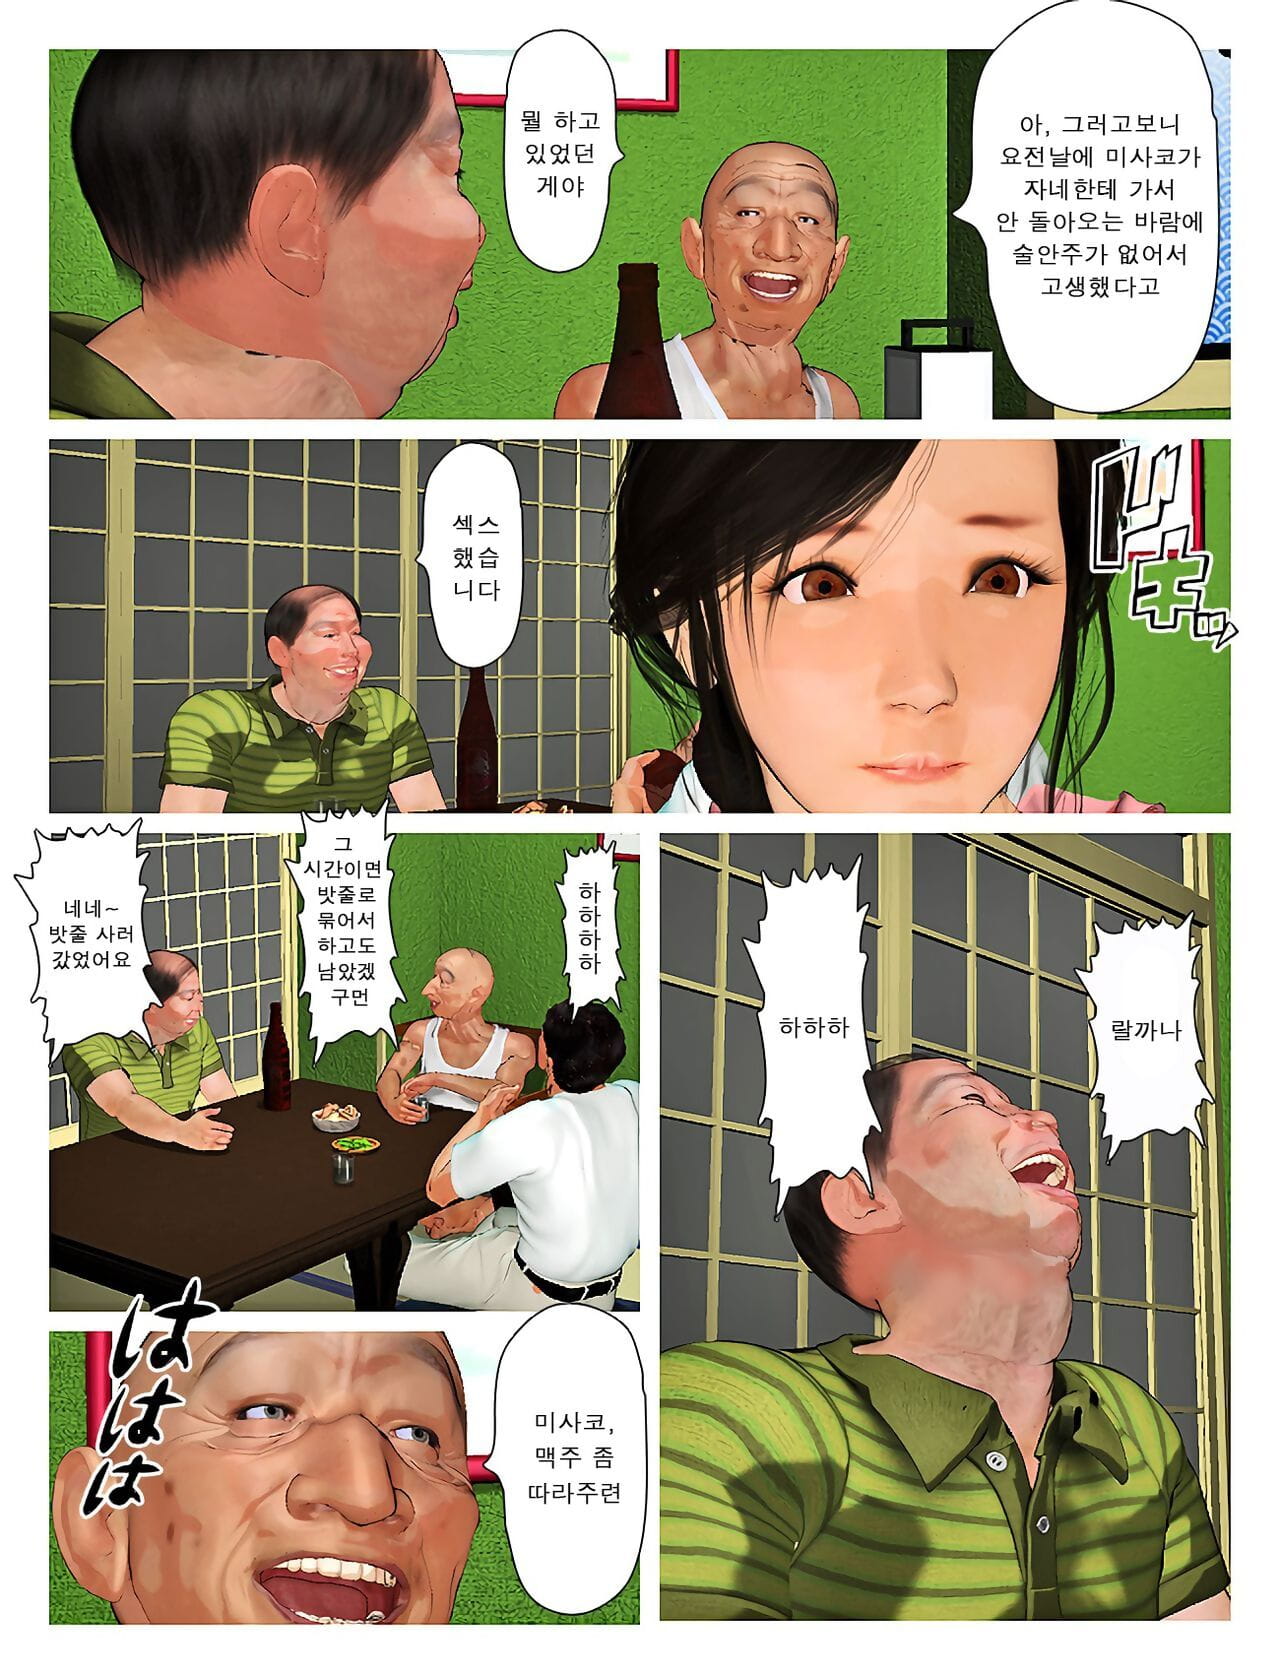 kyou geen misako san 2019:3 오늘의 미사코씨 2019:3 Onderdeel 2 page 1